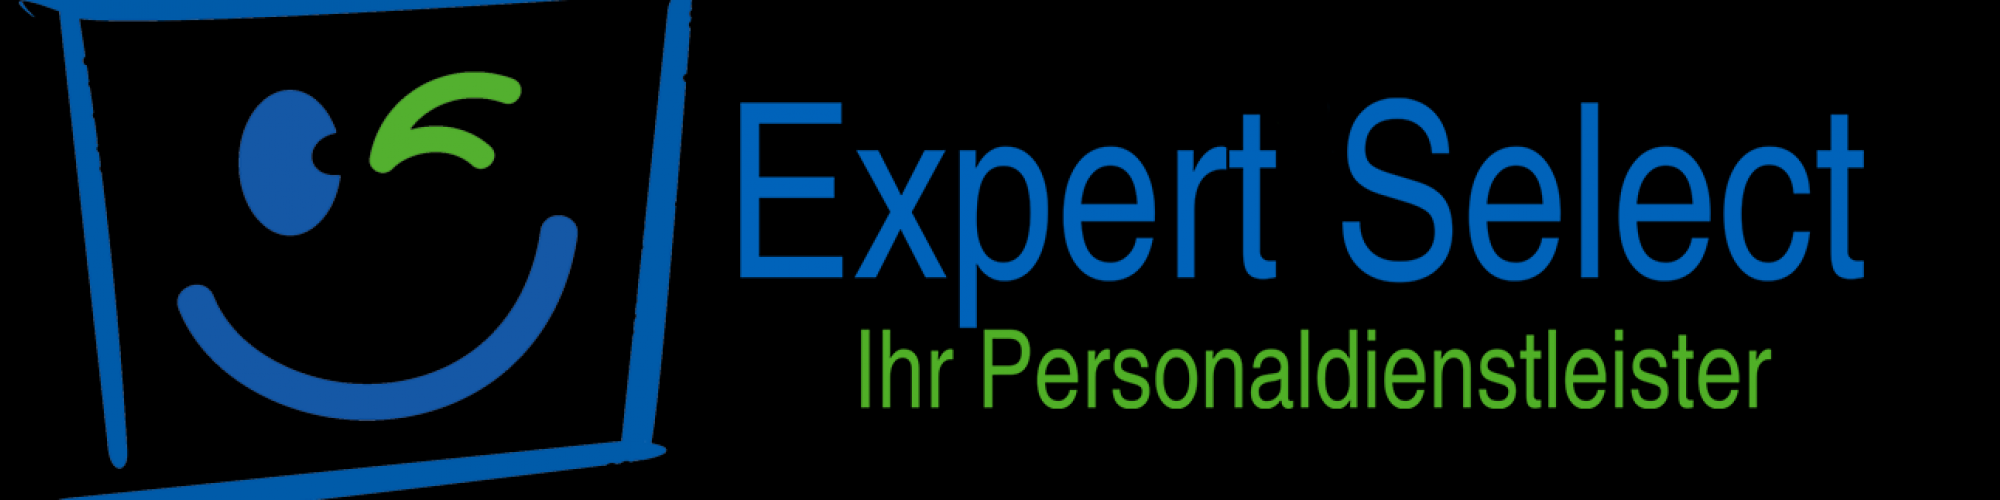 Expert Select GmbH - Ihr WUNSCH Personaldienstleister